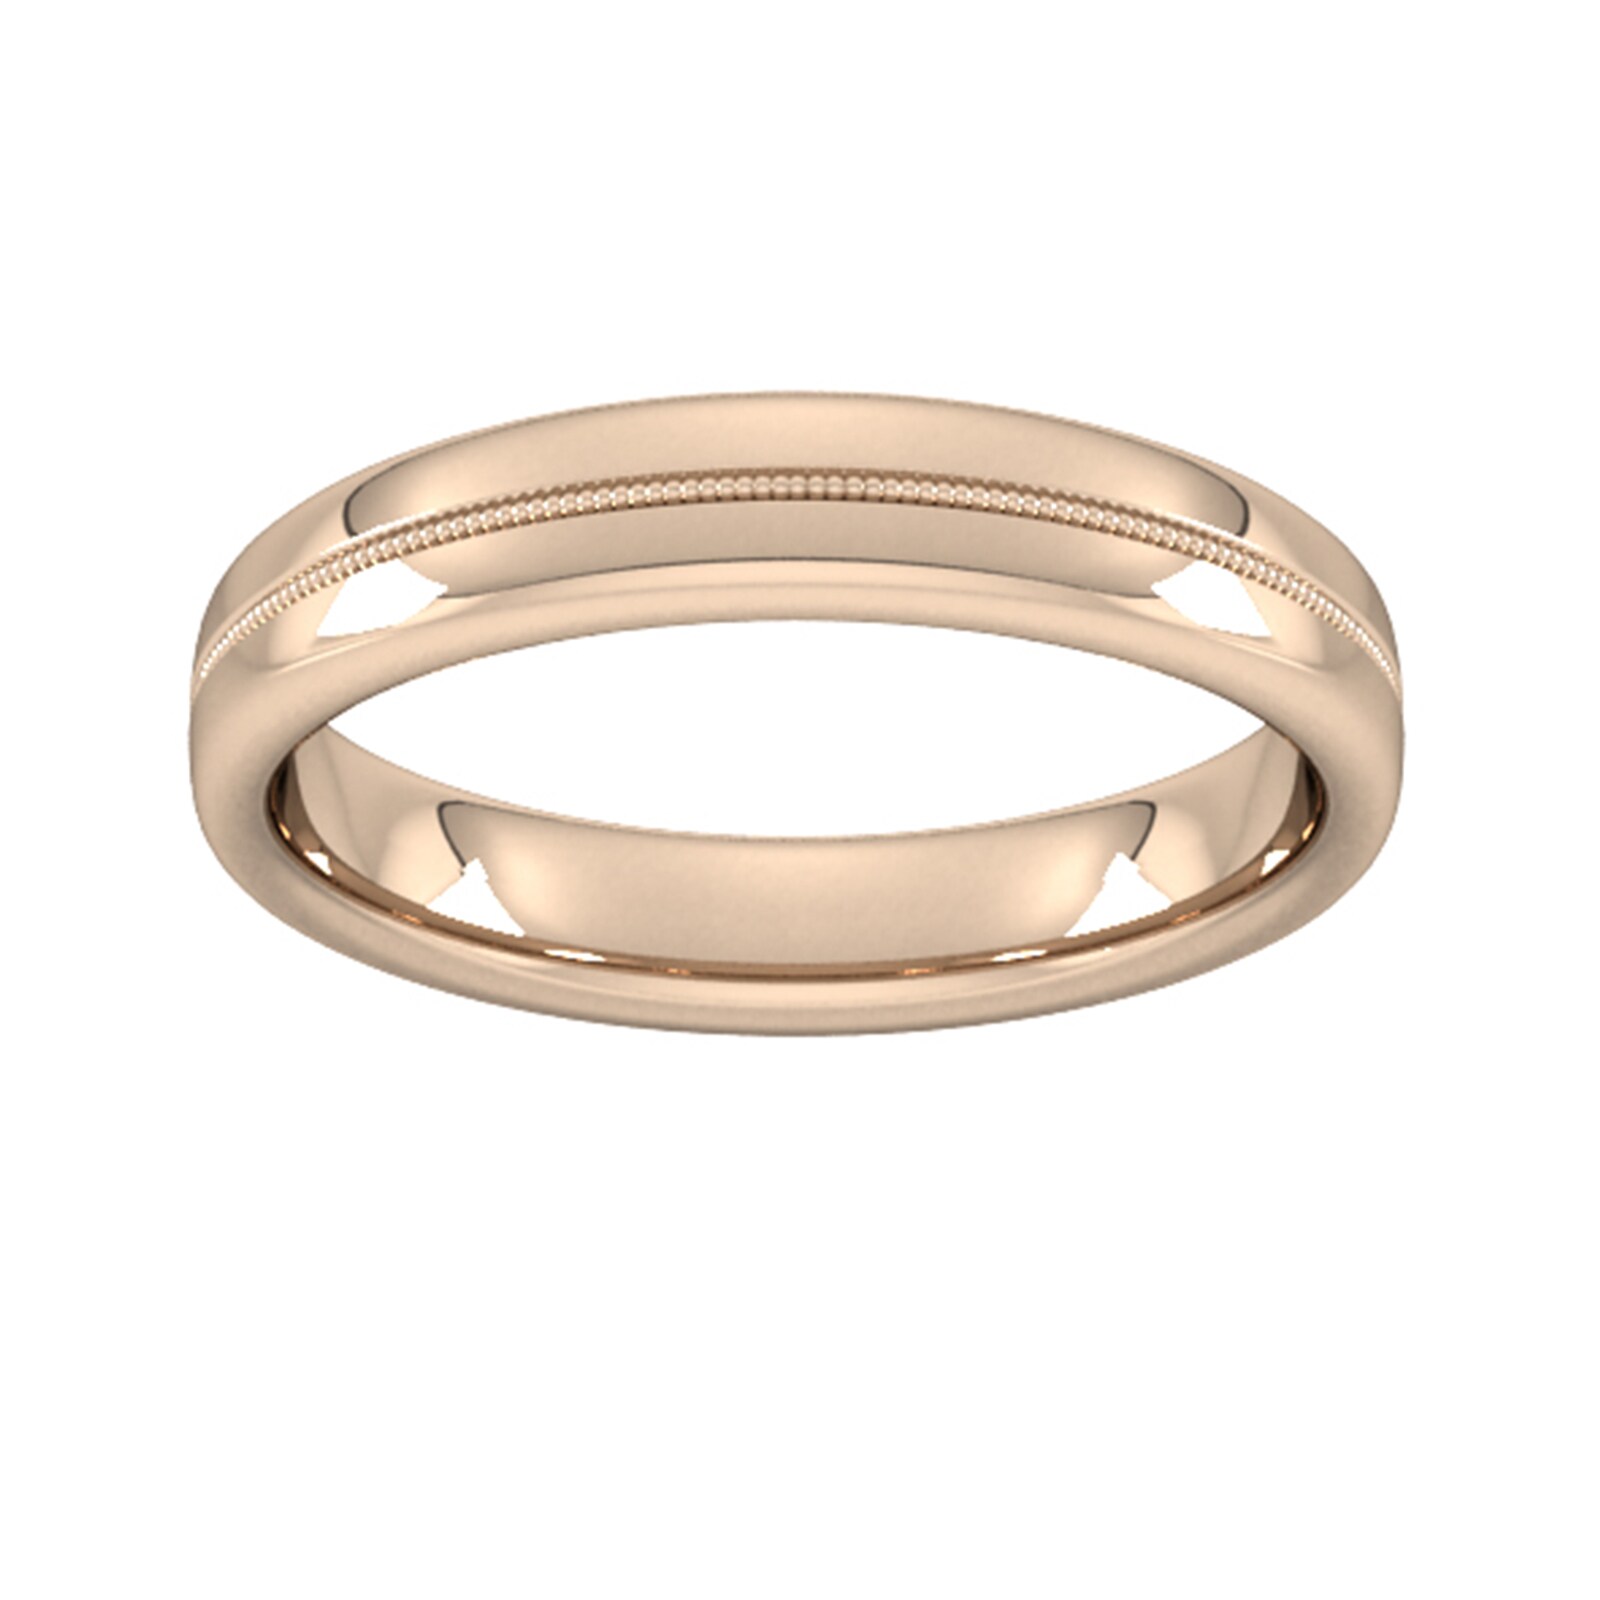 4mm Slight Court Standard Milgrain Centre Wedding Ring In 9 Carat Rose Gold - Ring Size K